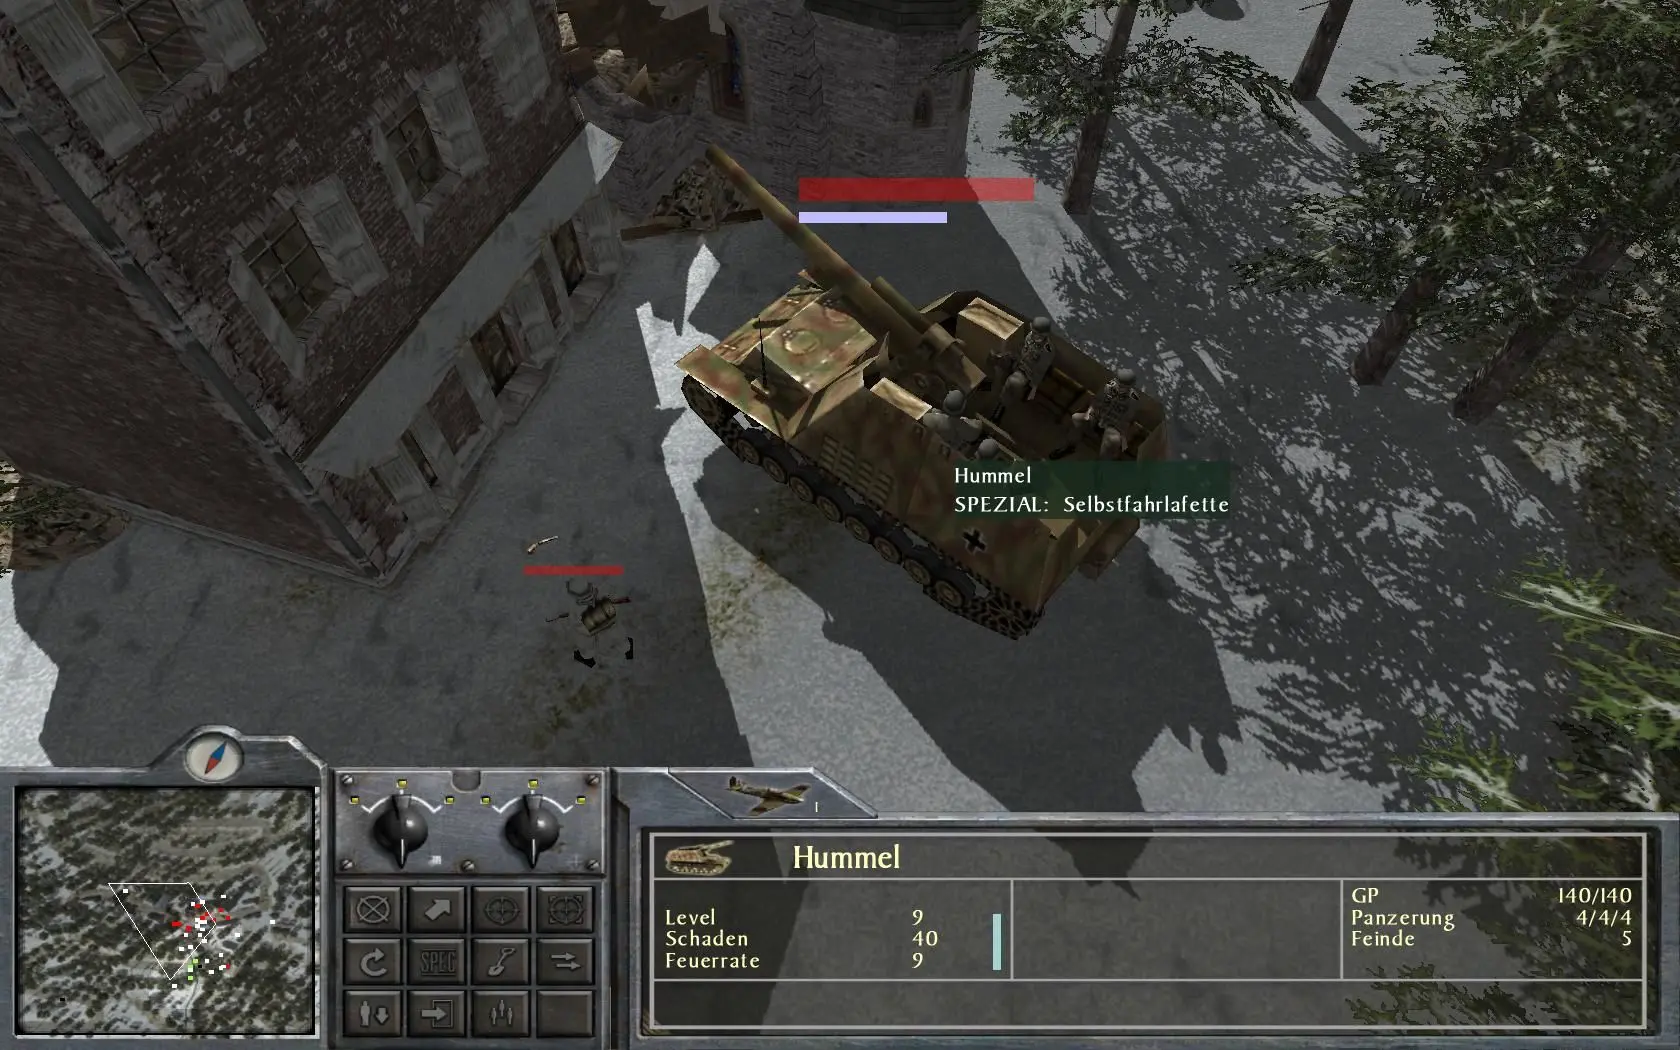 دانلود بازی No Surrender: 1944 Battle of the Bulge برای کامپیوتر PC